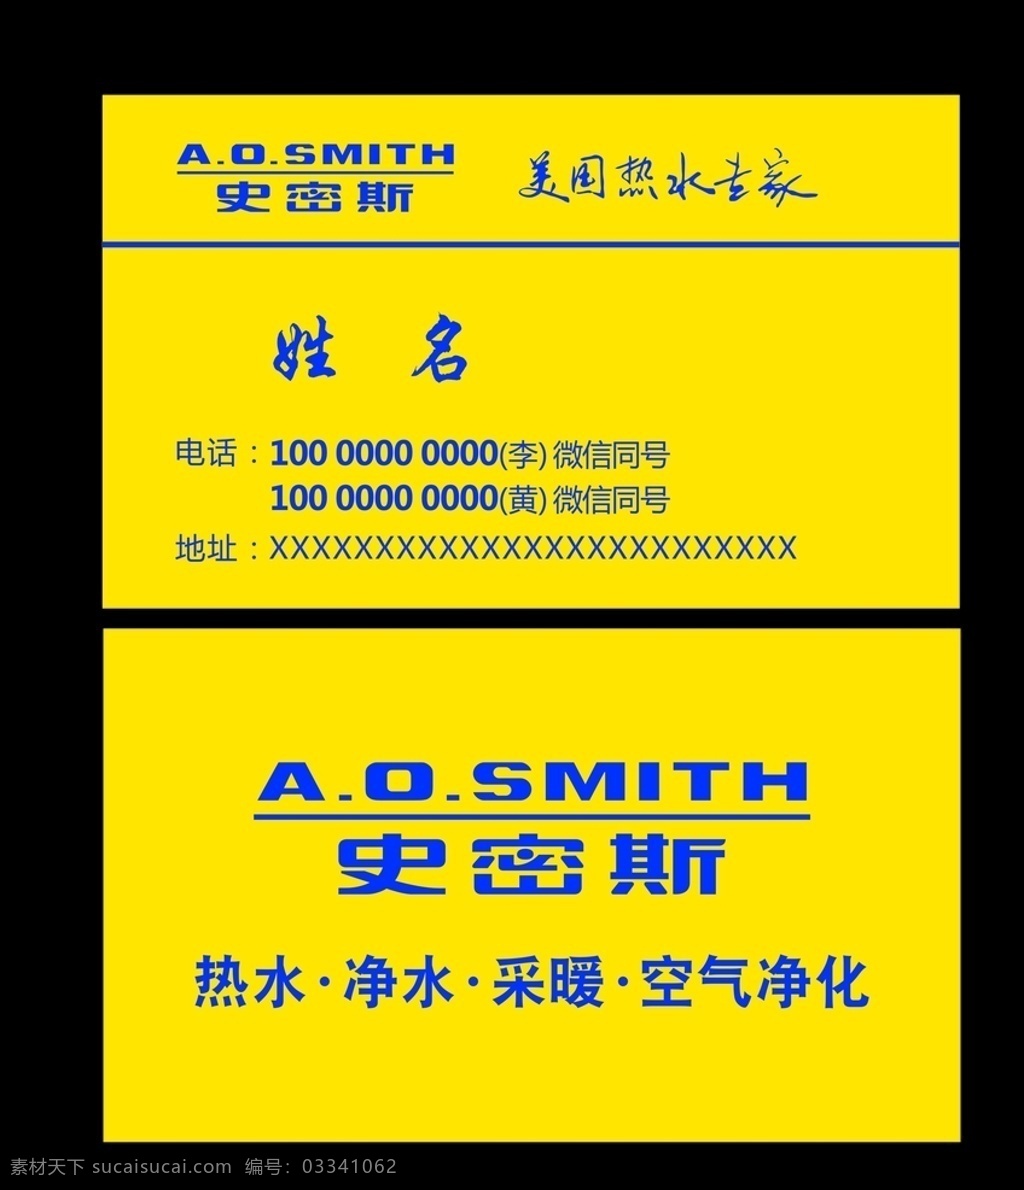 史密斯 logo 史密斯净水 热水 净水 采暖 空气净化 logo设计 名片卡片